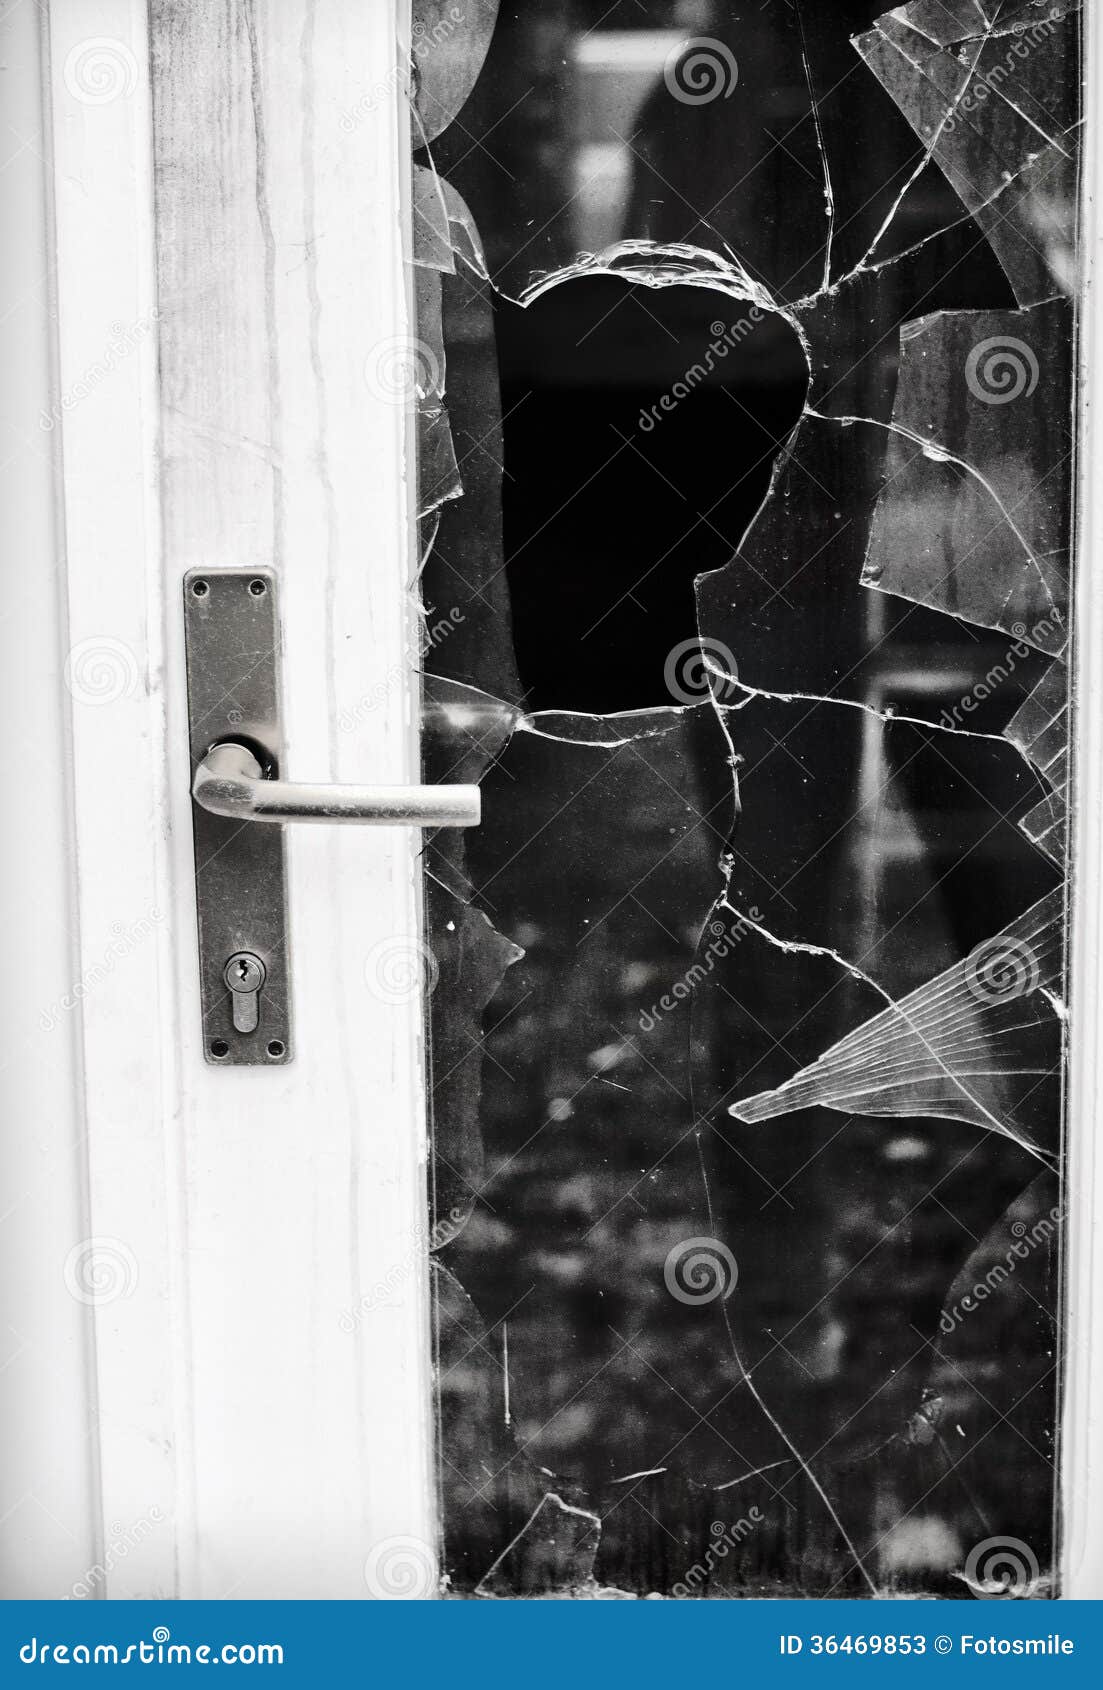 Посмотри на эти дома острые стекла. Разбитая дверь. Разбитое стекло в двери. Сломанная стеклянная дверь. Разбитое окно.